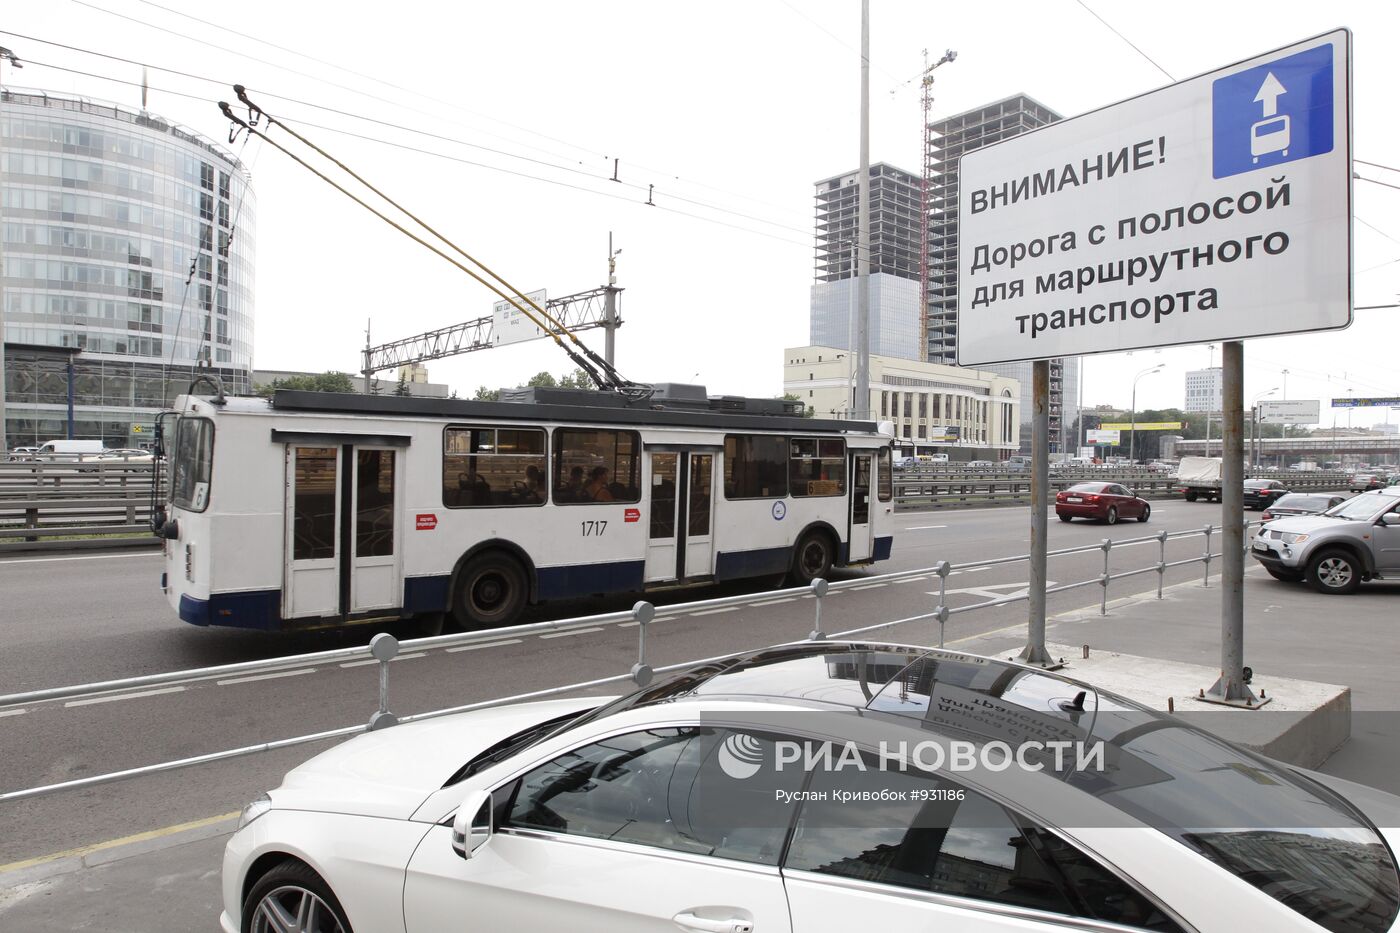 Полосы общественного транспорта в Москве